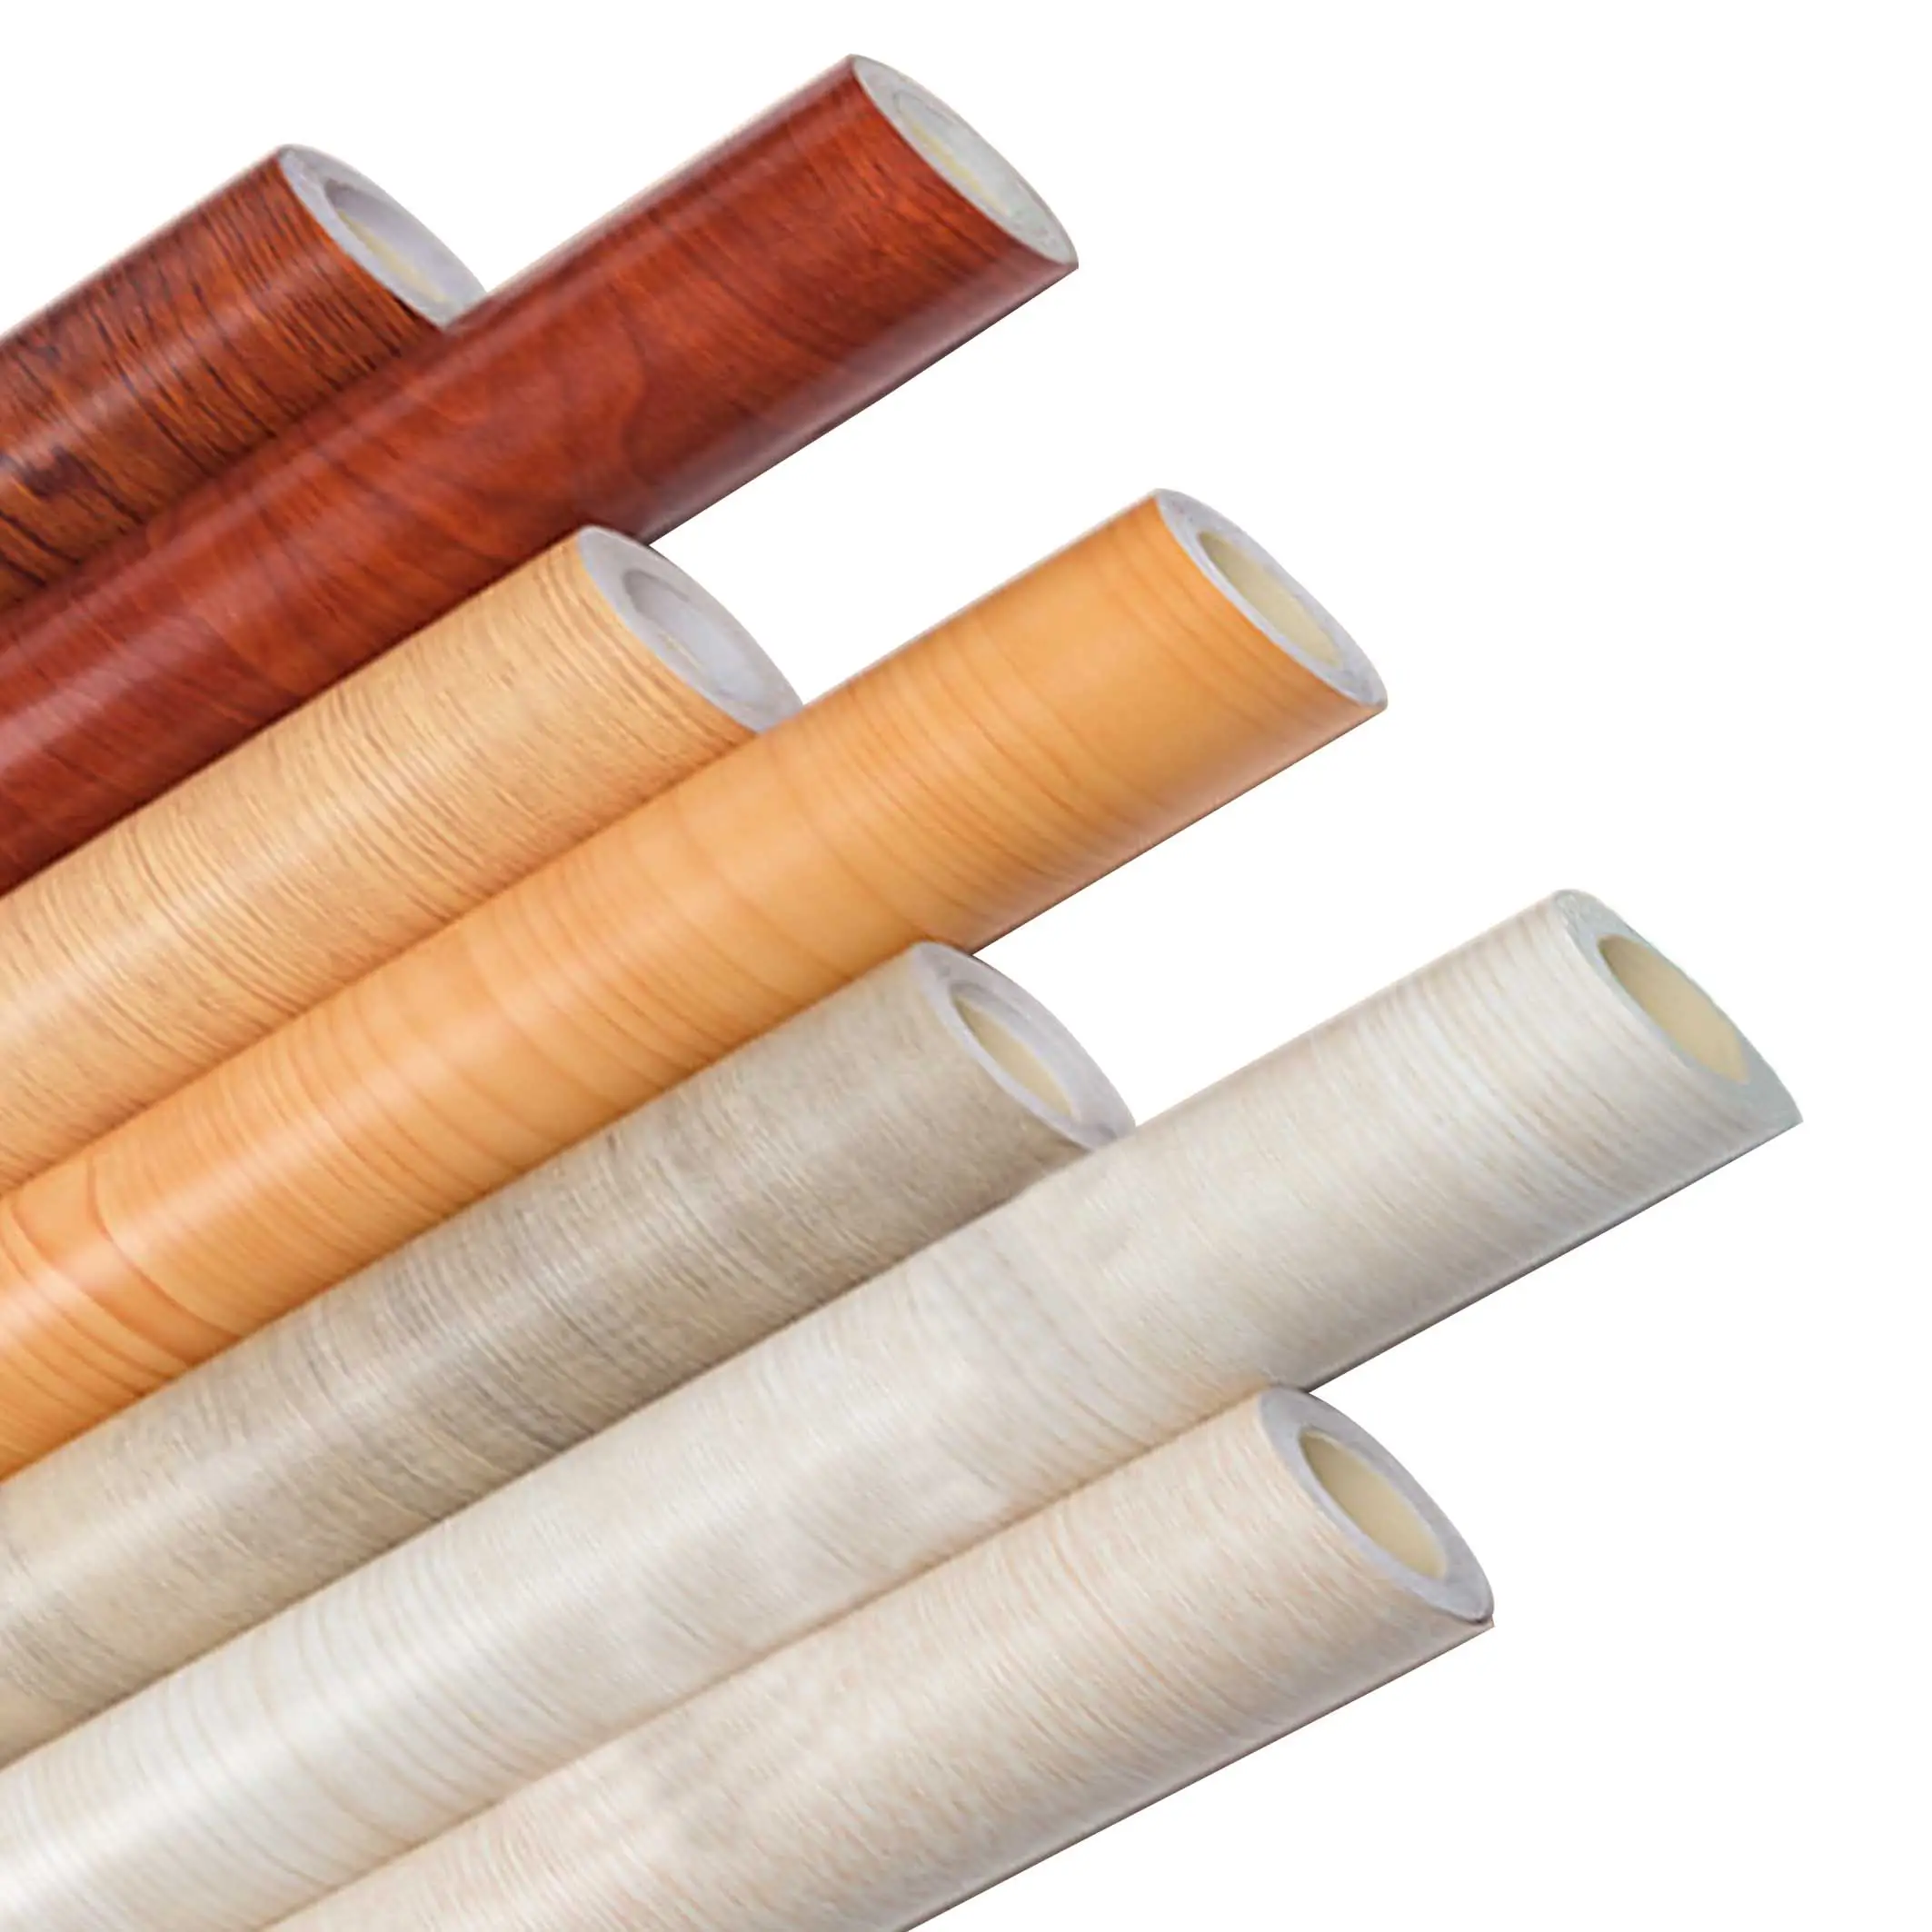 Pellicola in PVC antistatica con texture di legno ecologica in legno con venature di vinile foglio di plastica